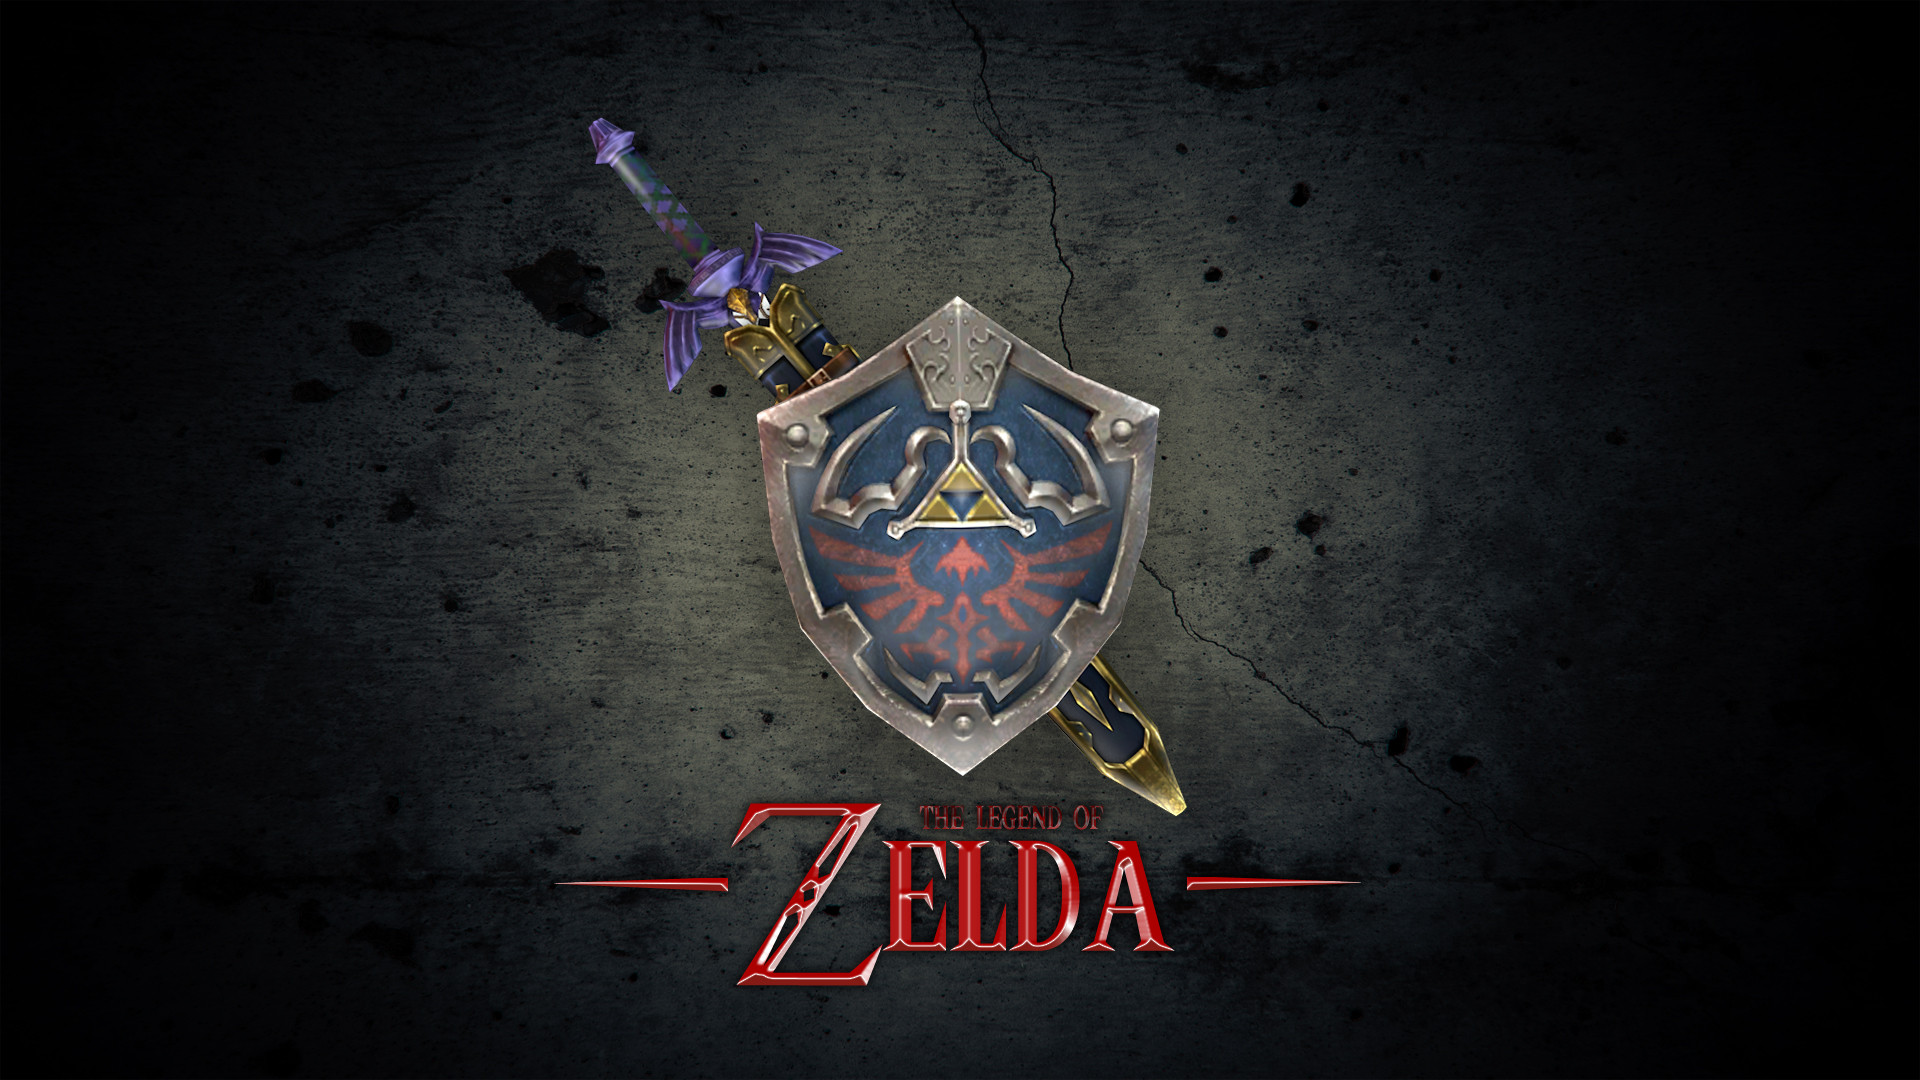 Free Download Legend of Zelda Wallpaper HD